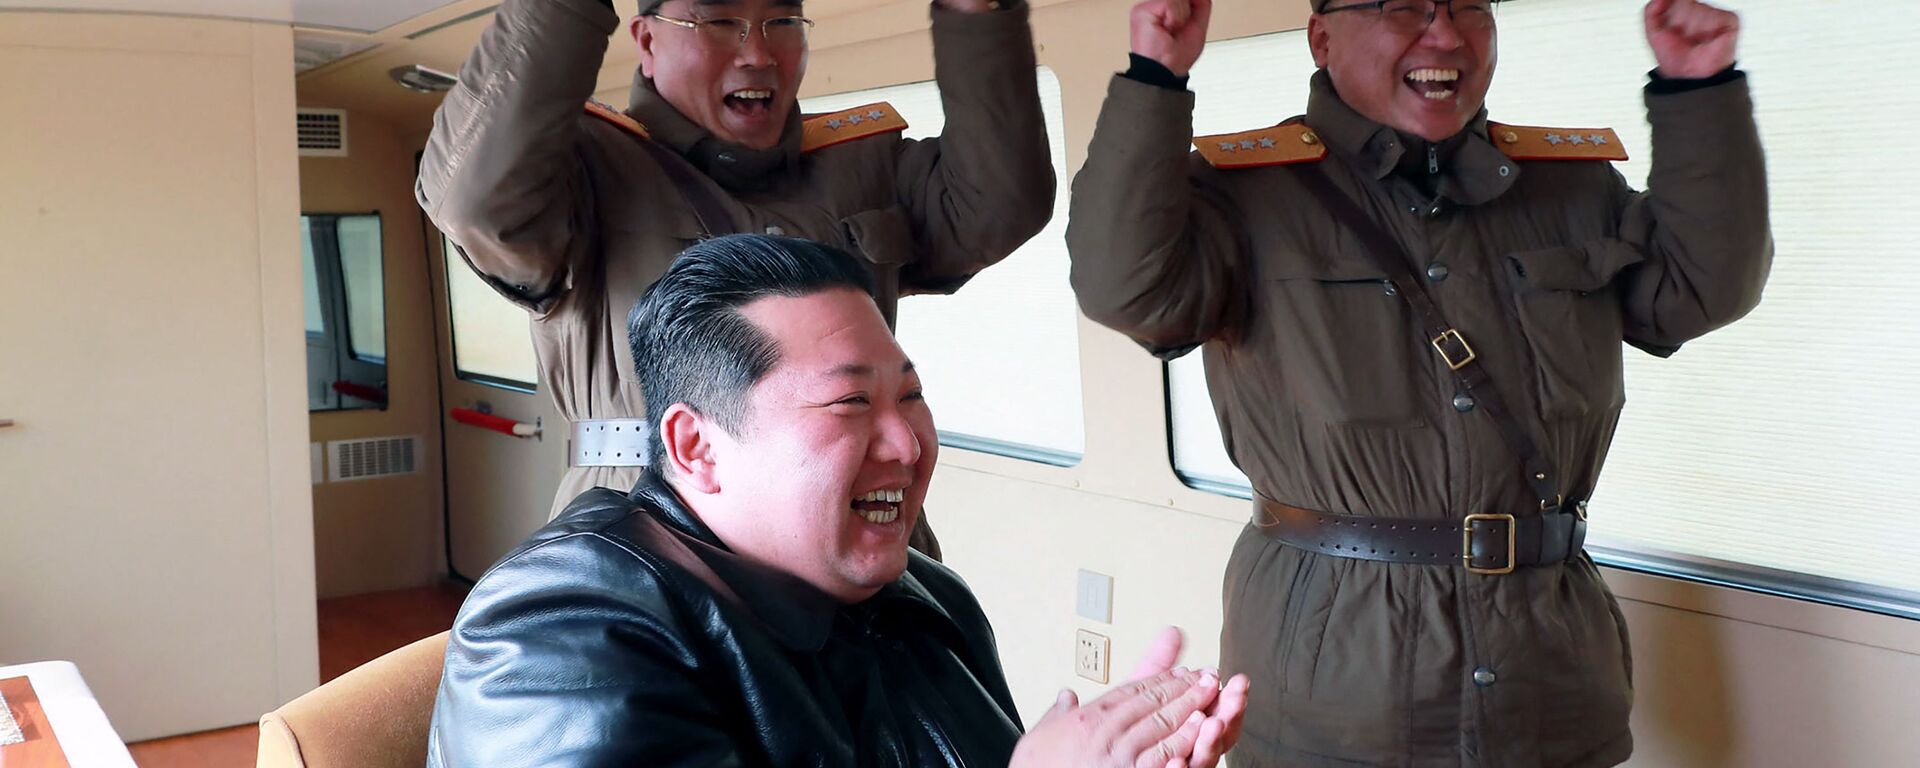 زعيم كوريا الشمالية كيم جونغ أون عند إطلاق  ما سمته وسائل إعلامية أنه نوع جديد من الصواريخ الباليستية العابرة للقارات، في هذه الصورة التي نشرتها وكالة الأنباء المركزية الكورية الشمالية  في 24 مارس 2022. - سبوتنيك عربي, 1920, 13.07.2022